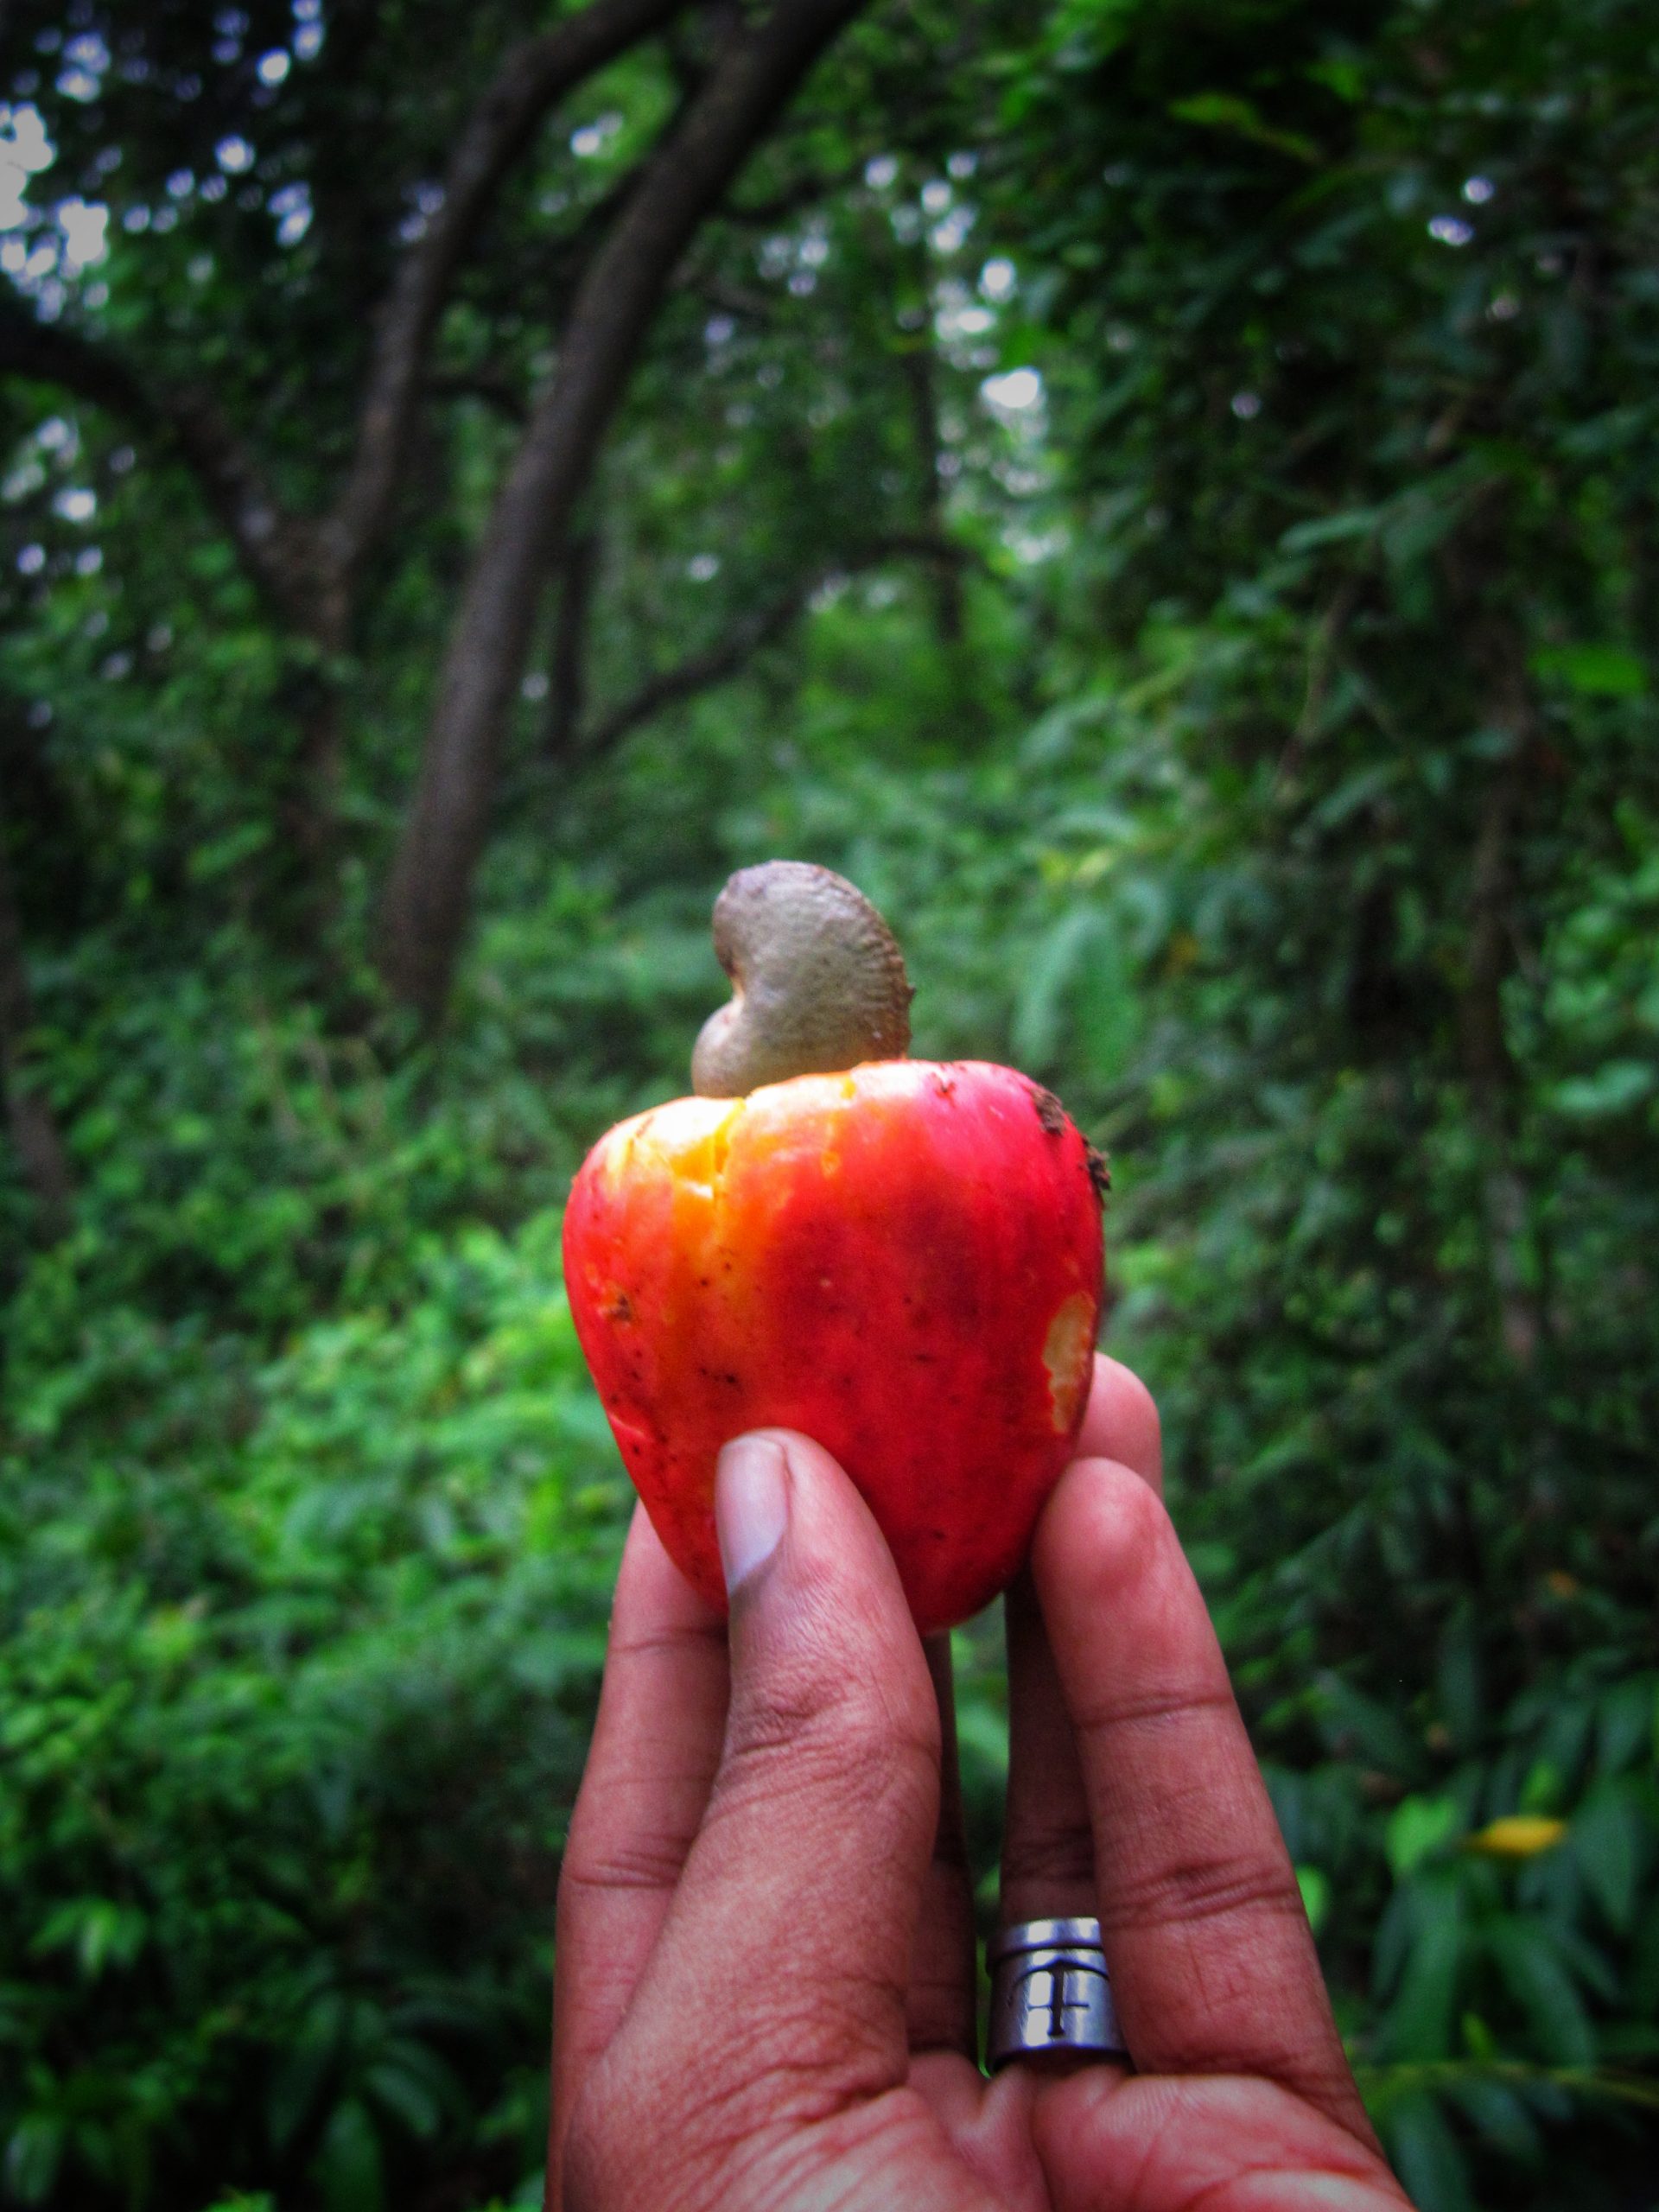 A cashew fruit